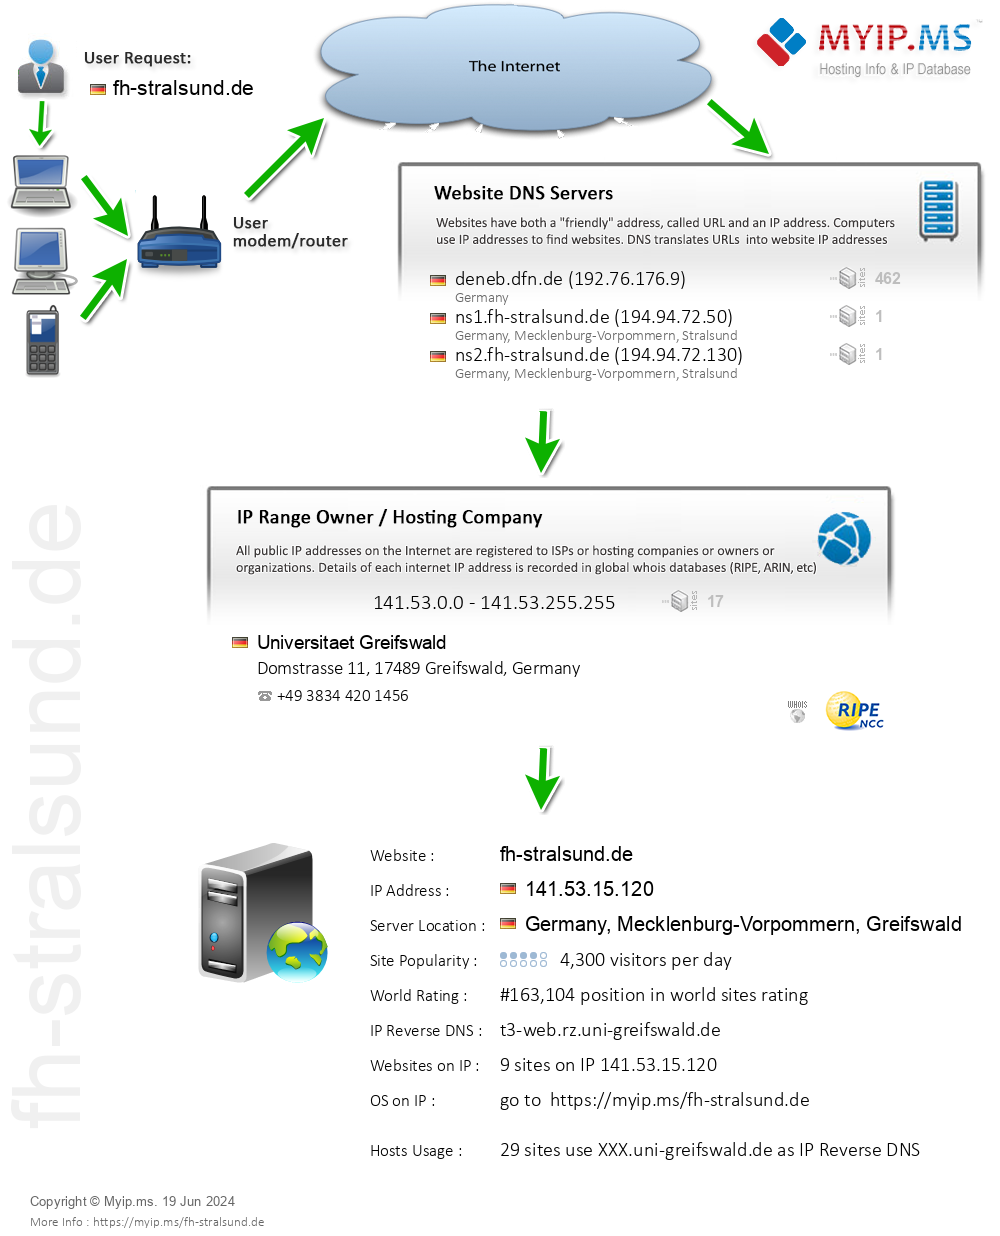 Fh-stralsund.de - Website Hosting Visual IP Diagram